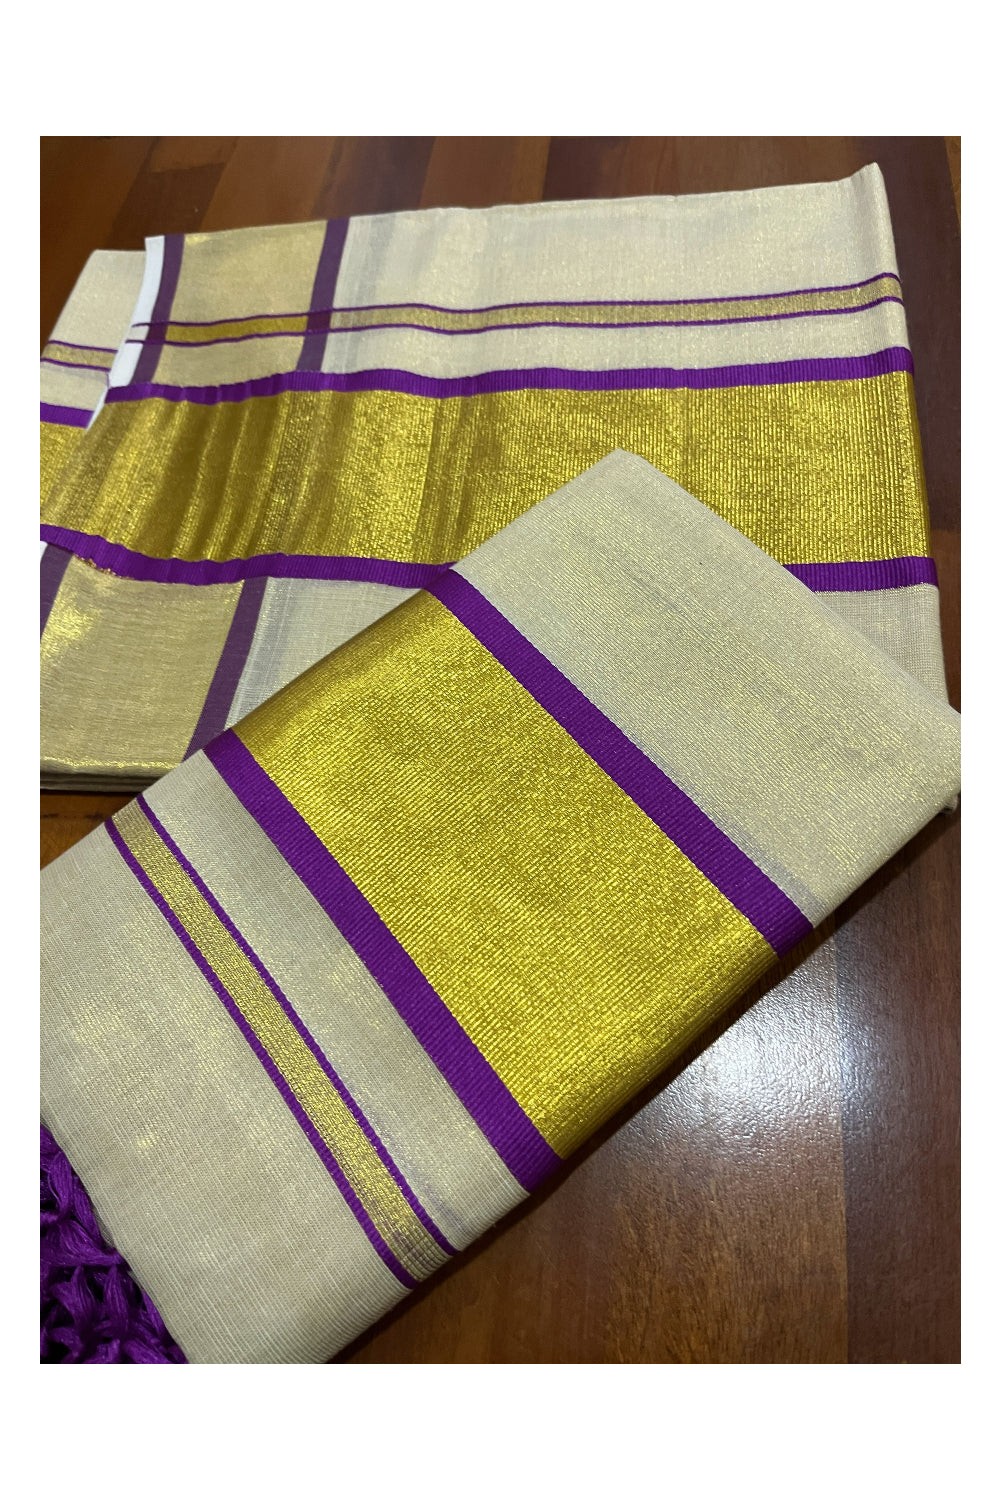 Kerala Tissue Kasavu Set Mundu with Kasavu and Purple Border (Mundum Neriyathum)